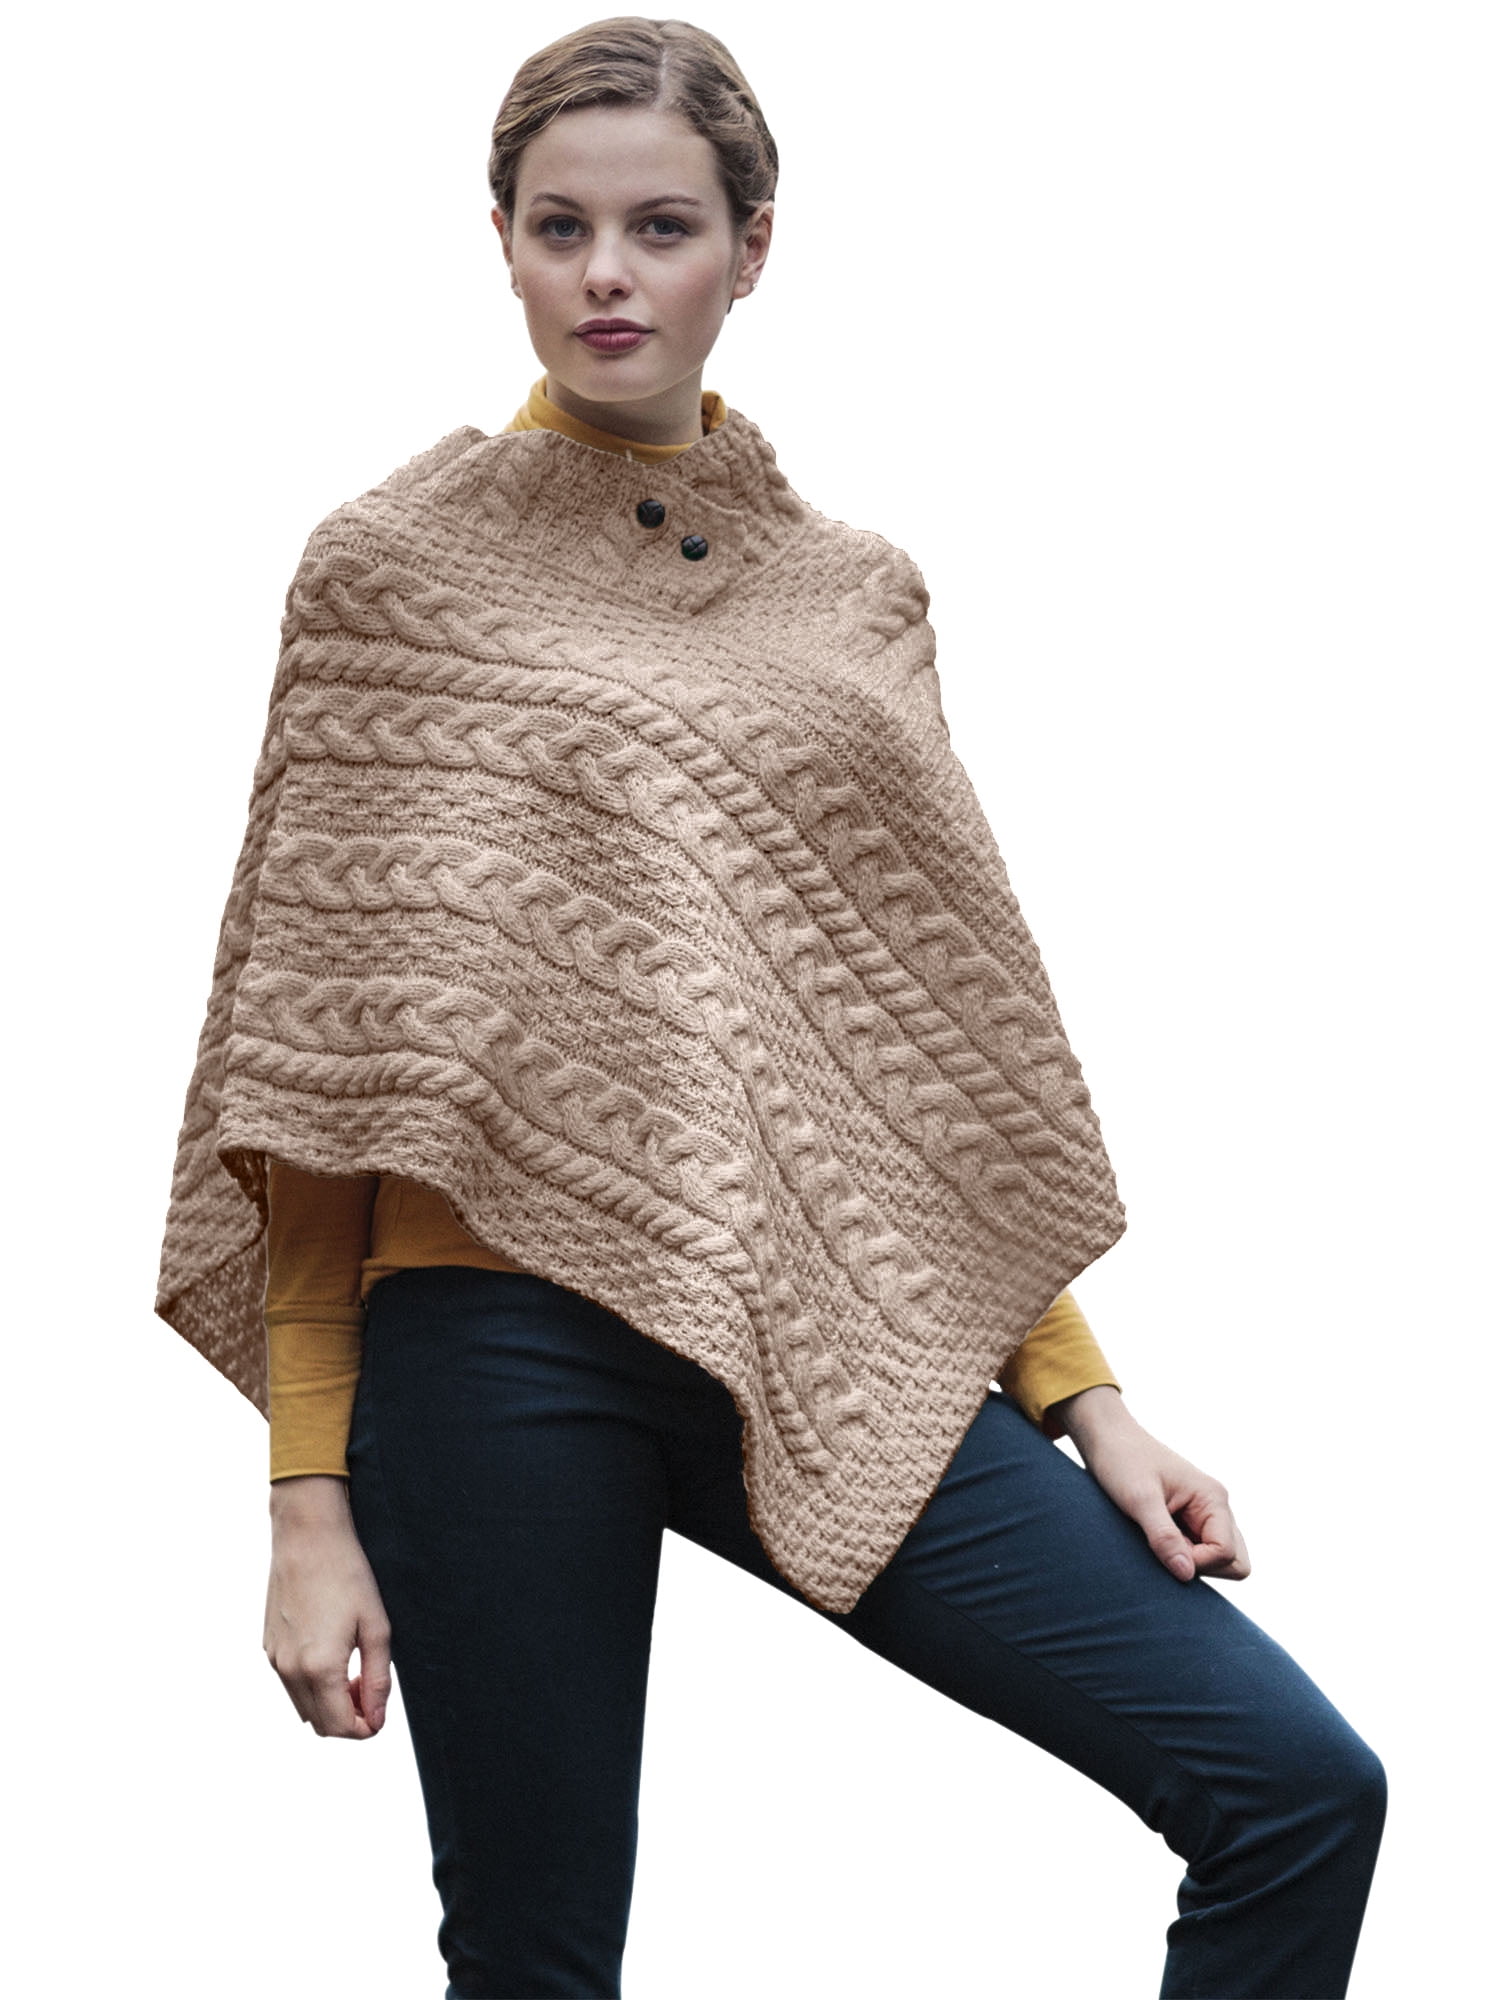 Aran Woollen Mills - Aran Woollen Mills Poncho Sweater 100% Merino Wool ...